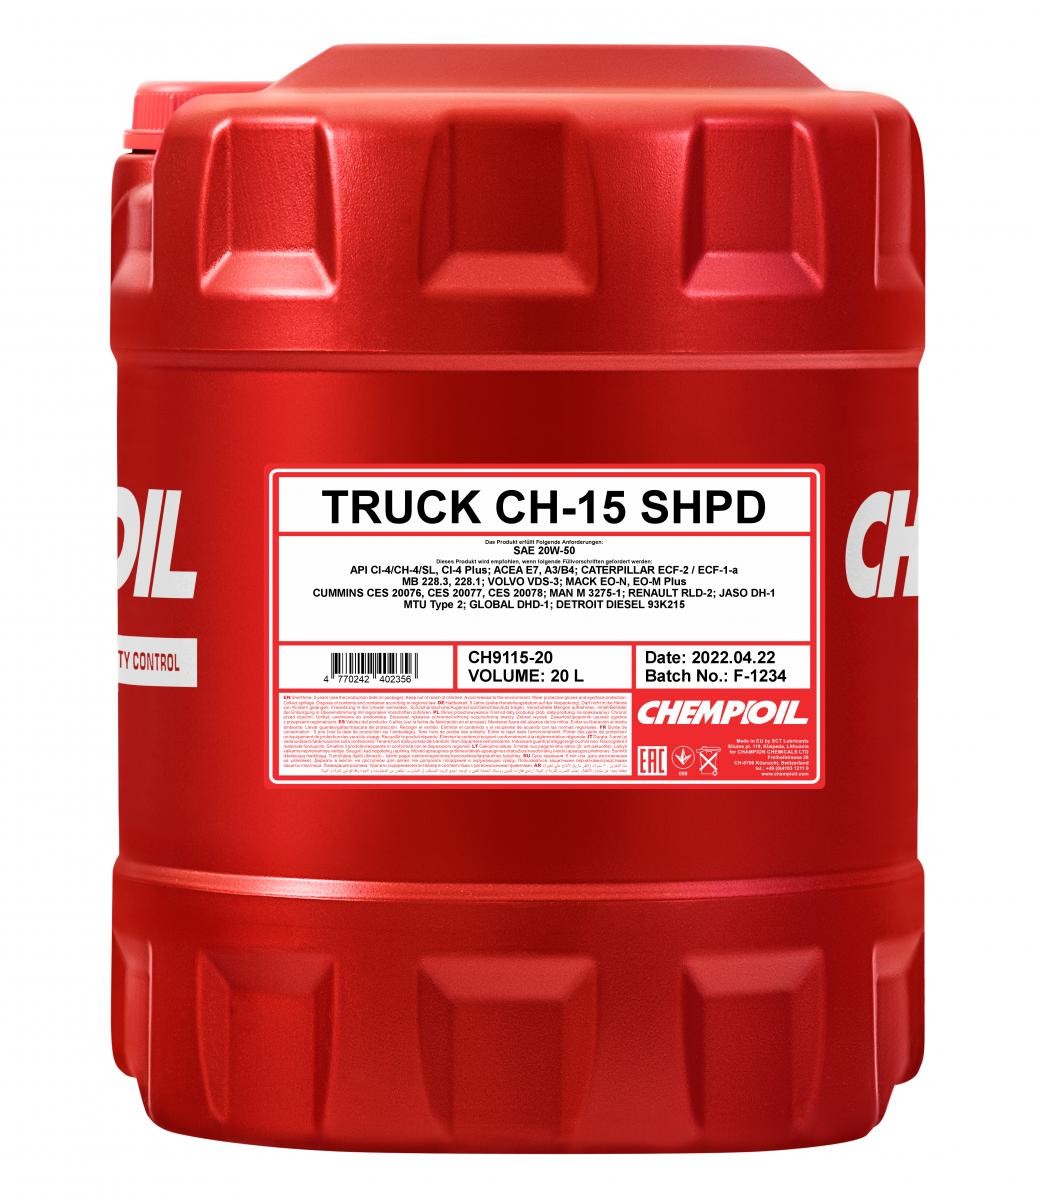 CH9115-20 CHEMPIOIL Oil HYUNDAI 20W-50, 20l